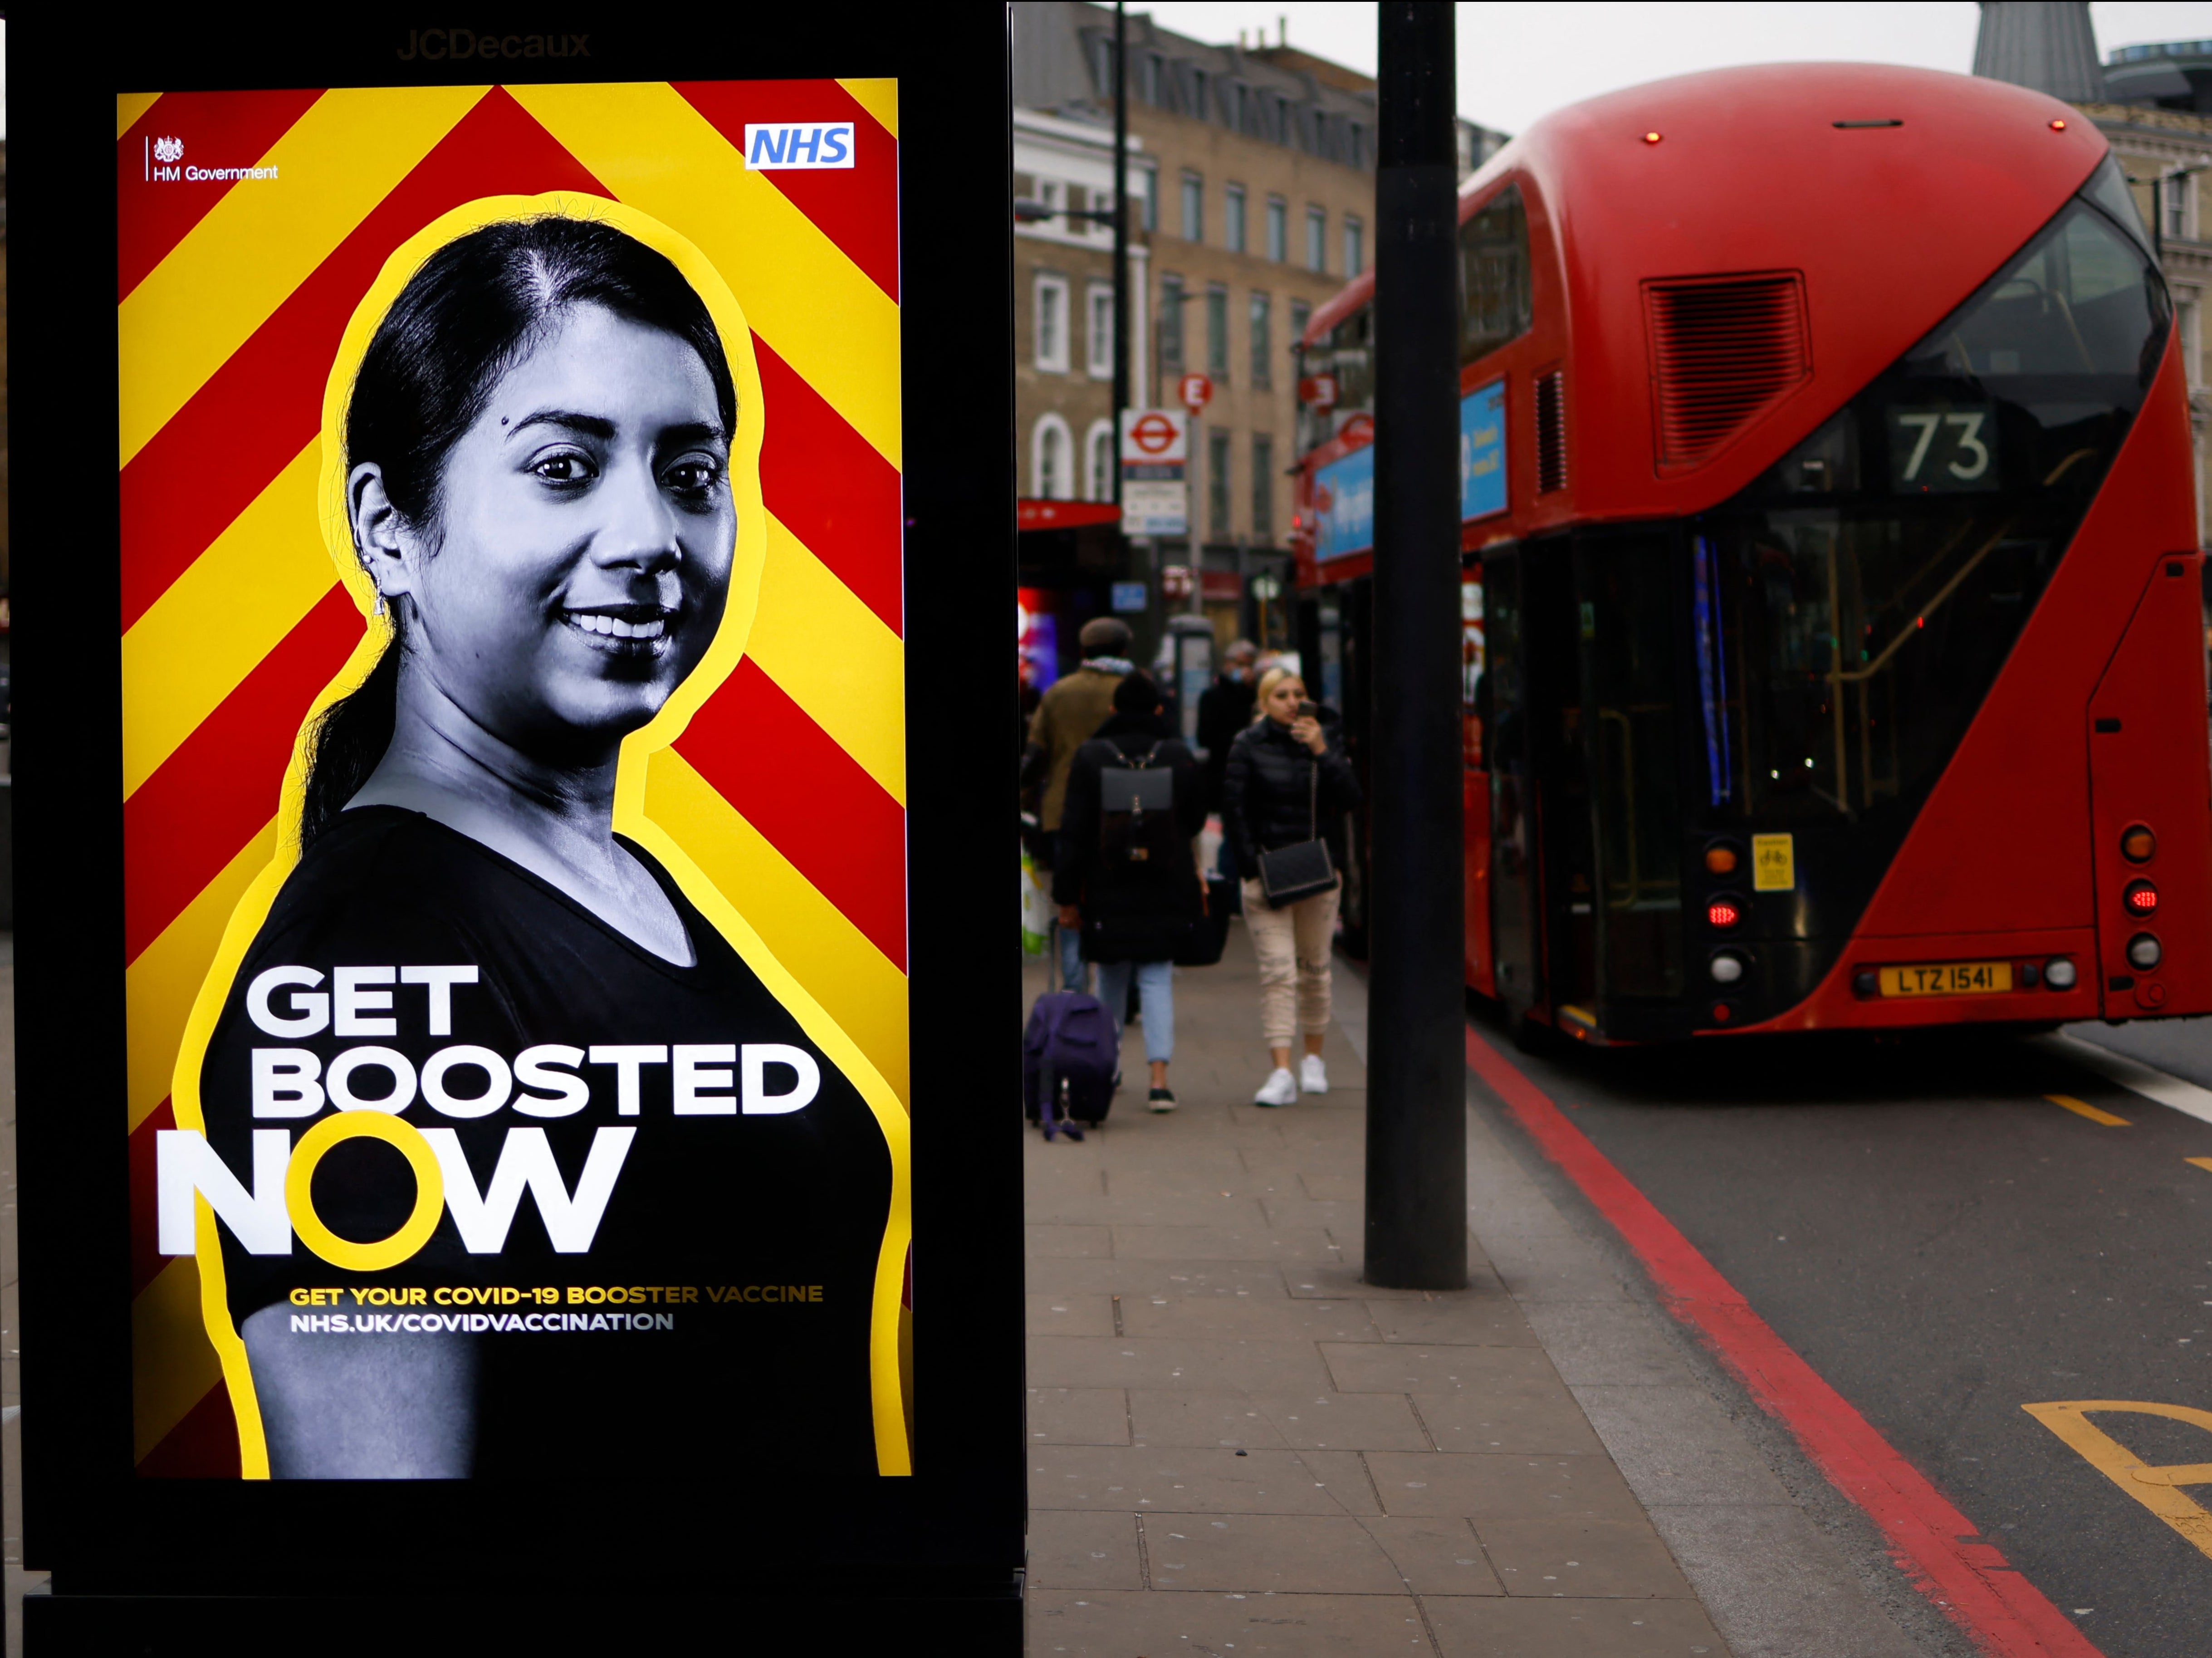 Un autobús londinense rojo se detiene en una parada de autobús que muestra un anuncio del gobierno que promueve el programa de vacunación covid-19 del NHS